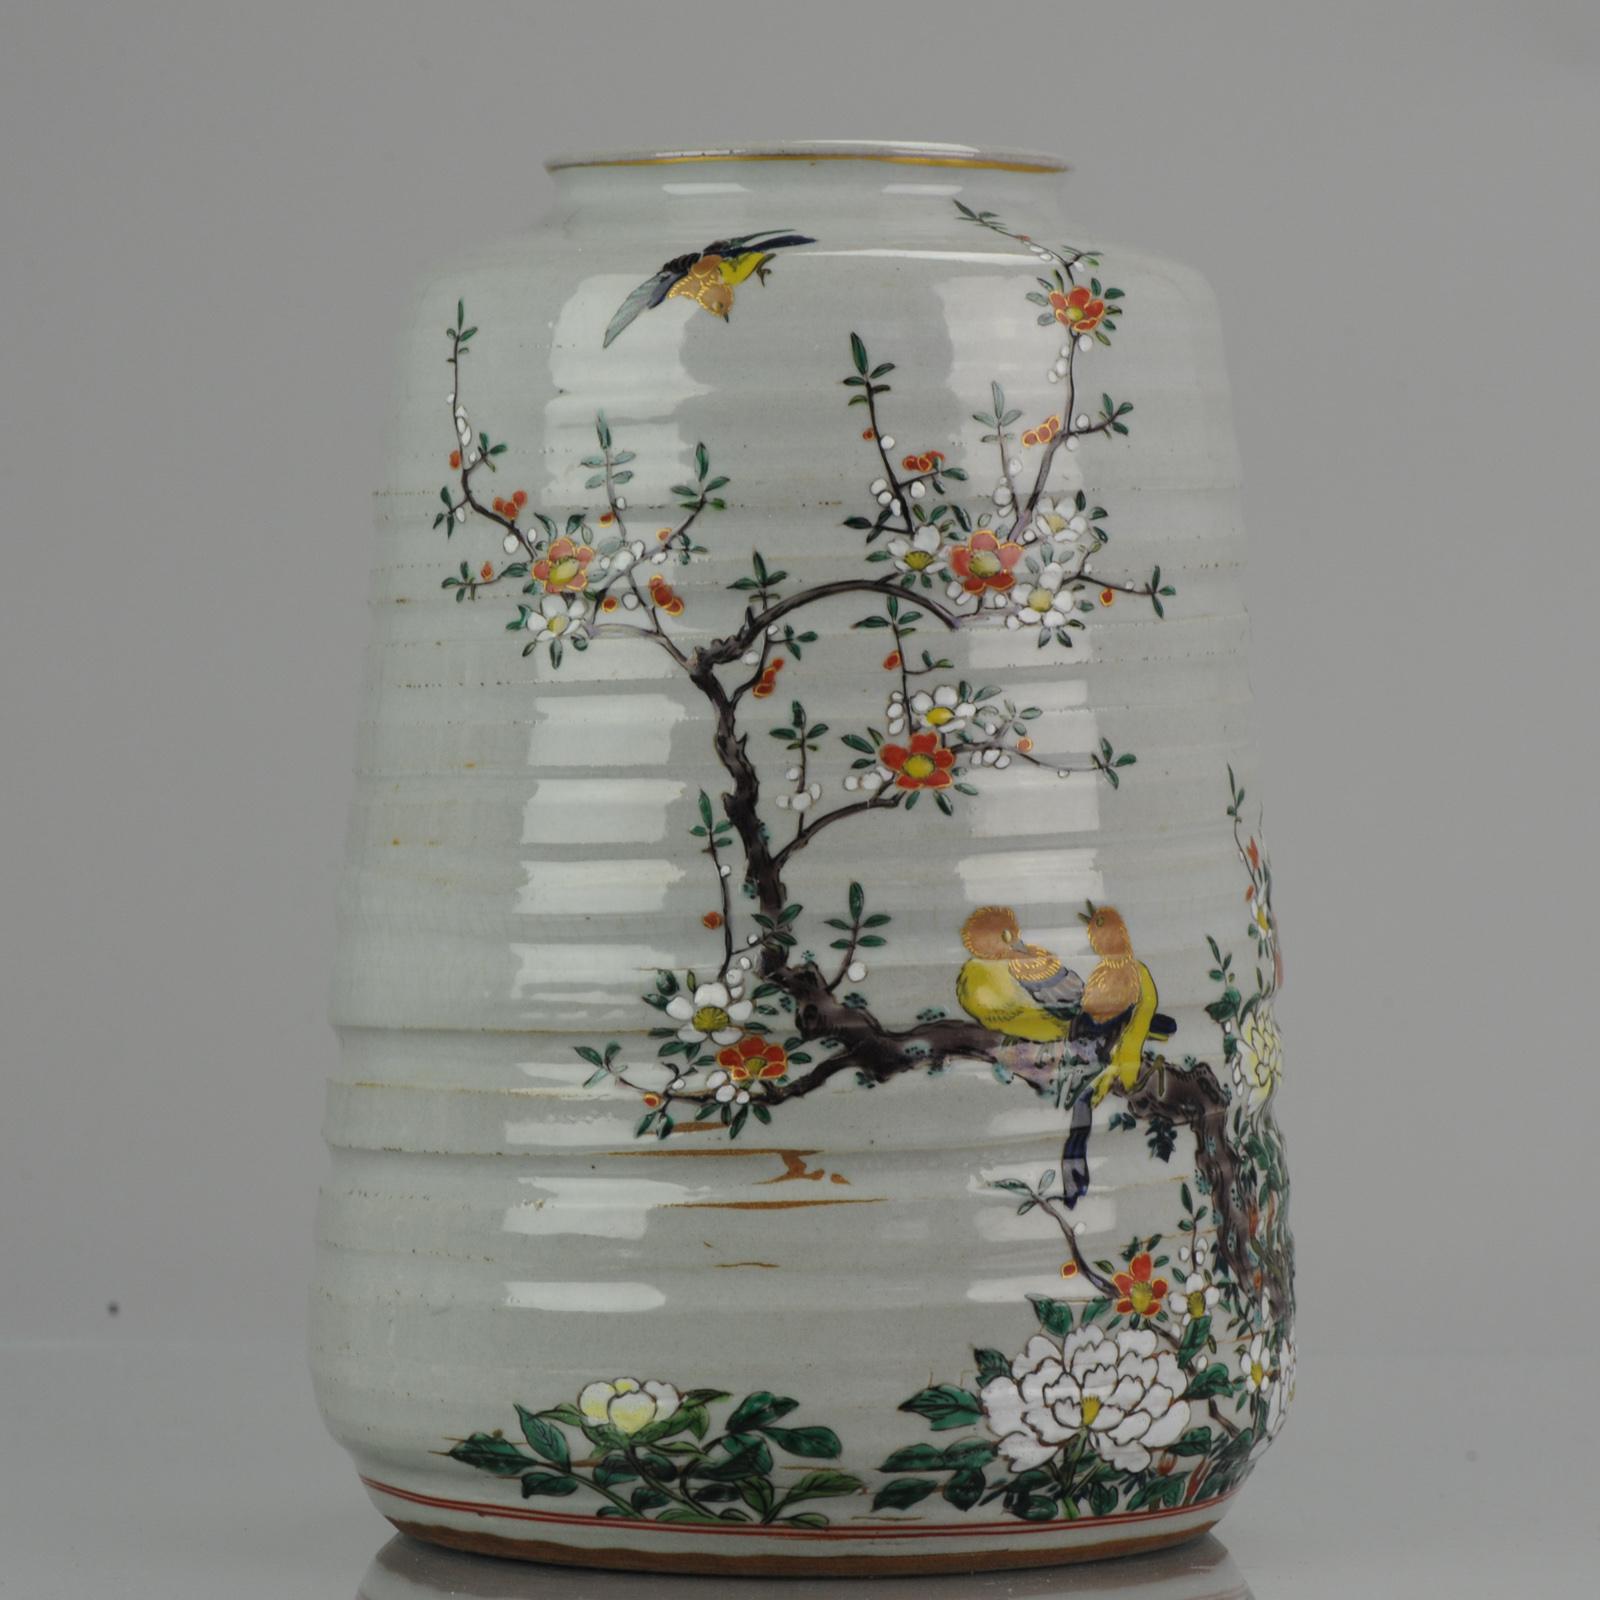 Fabelhafte Vase mit einer Markierung auf dem Sockel. Kutani

Bedingung
Gesamtzustand einige Brennfehler in der Basis und einige Linienausschnitte in der Nähe des Randes. 225 x 160mm H x T
Zeitraum
Meiji-Periode (1867-1912).
 
  